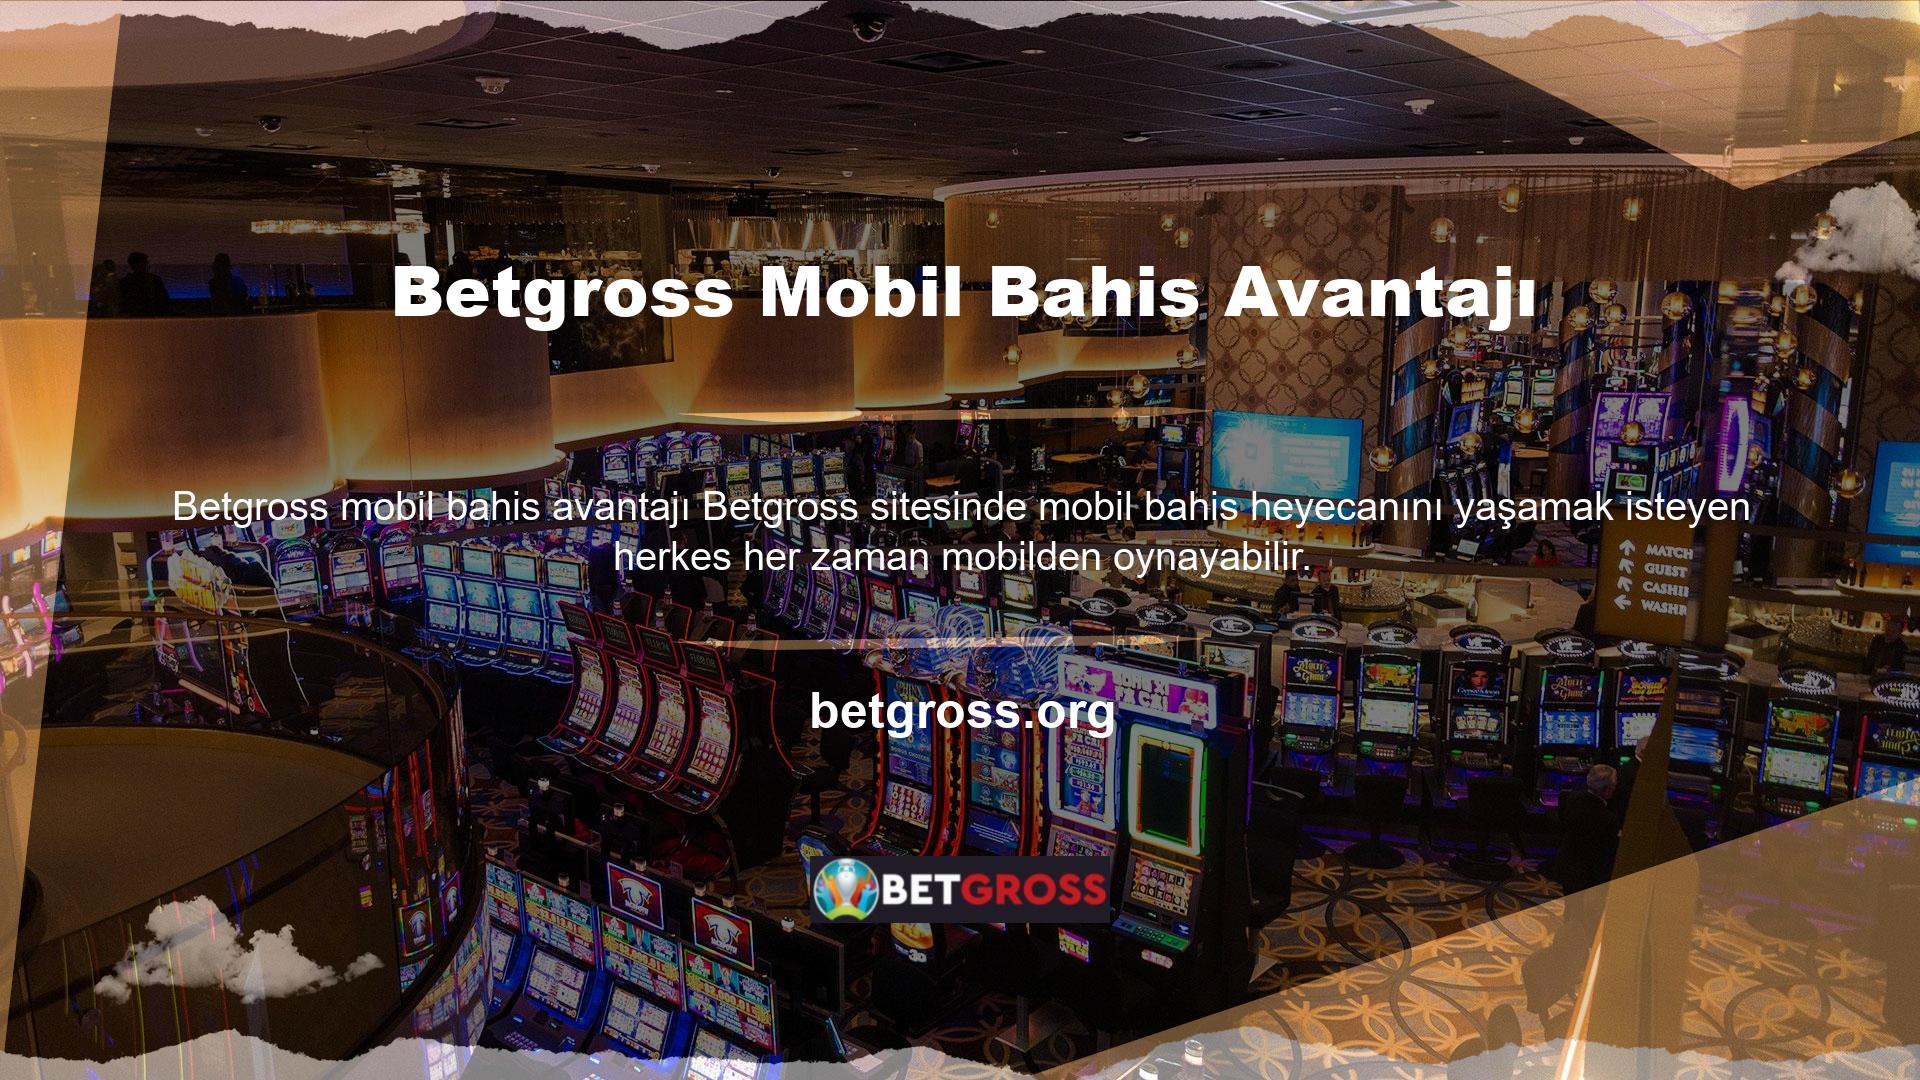 Tek yapmanız gereken Betgross mobil uygulamasını indirmek veya doğrudan mobil cihazınızdan Betgross web sitesine giriş yapmaktır